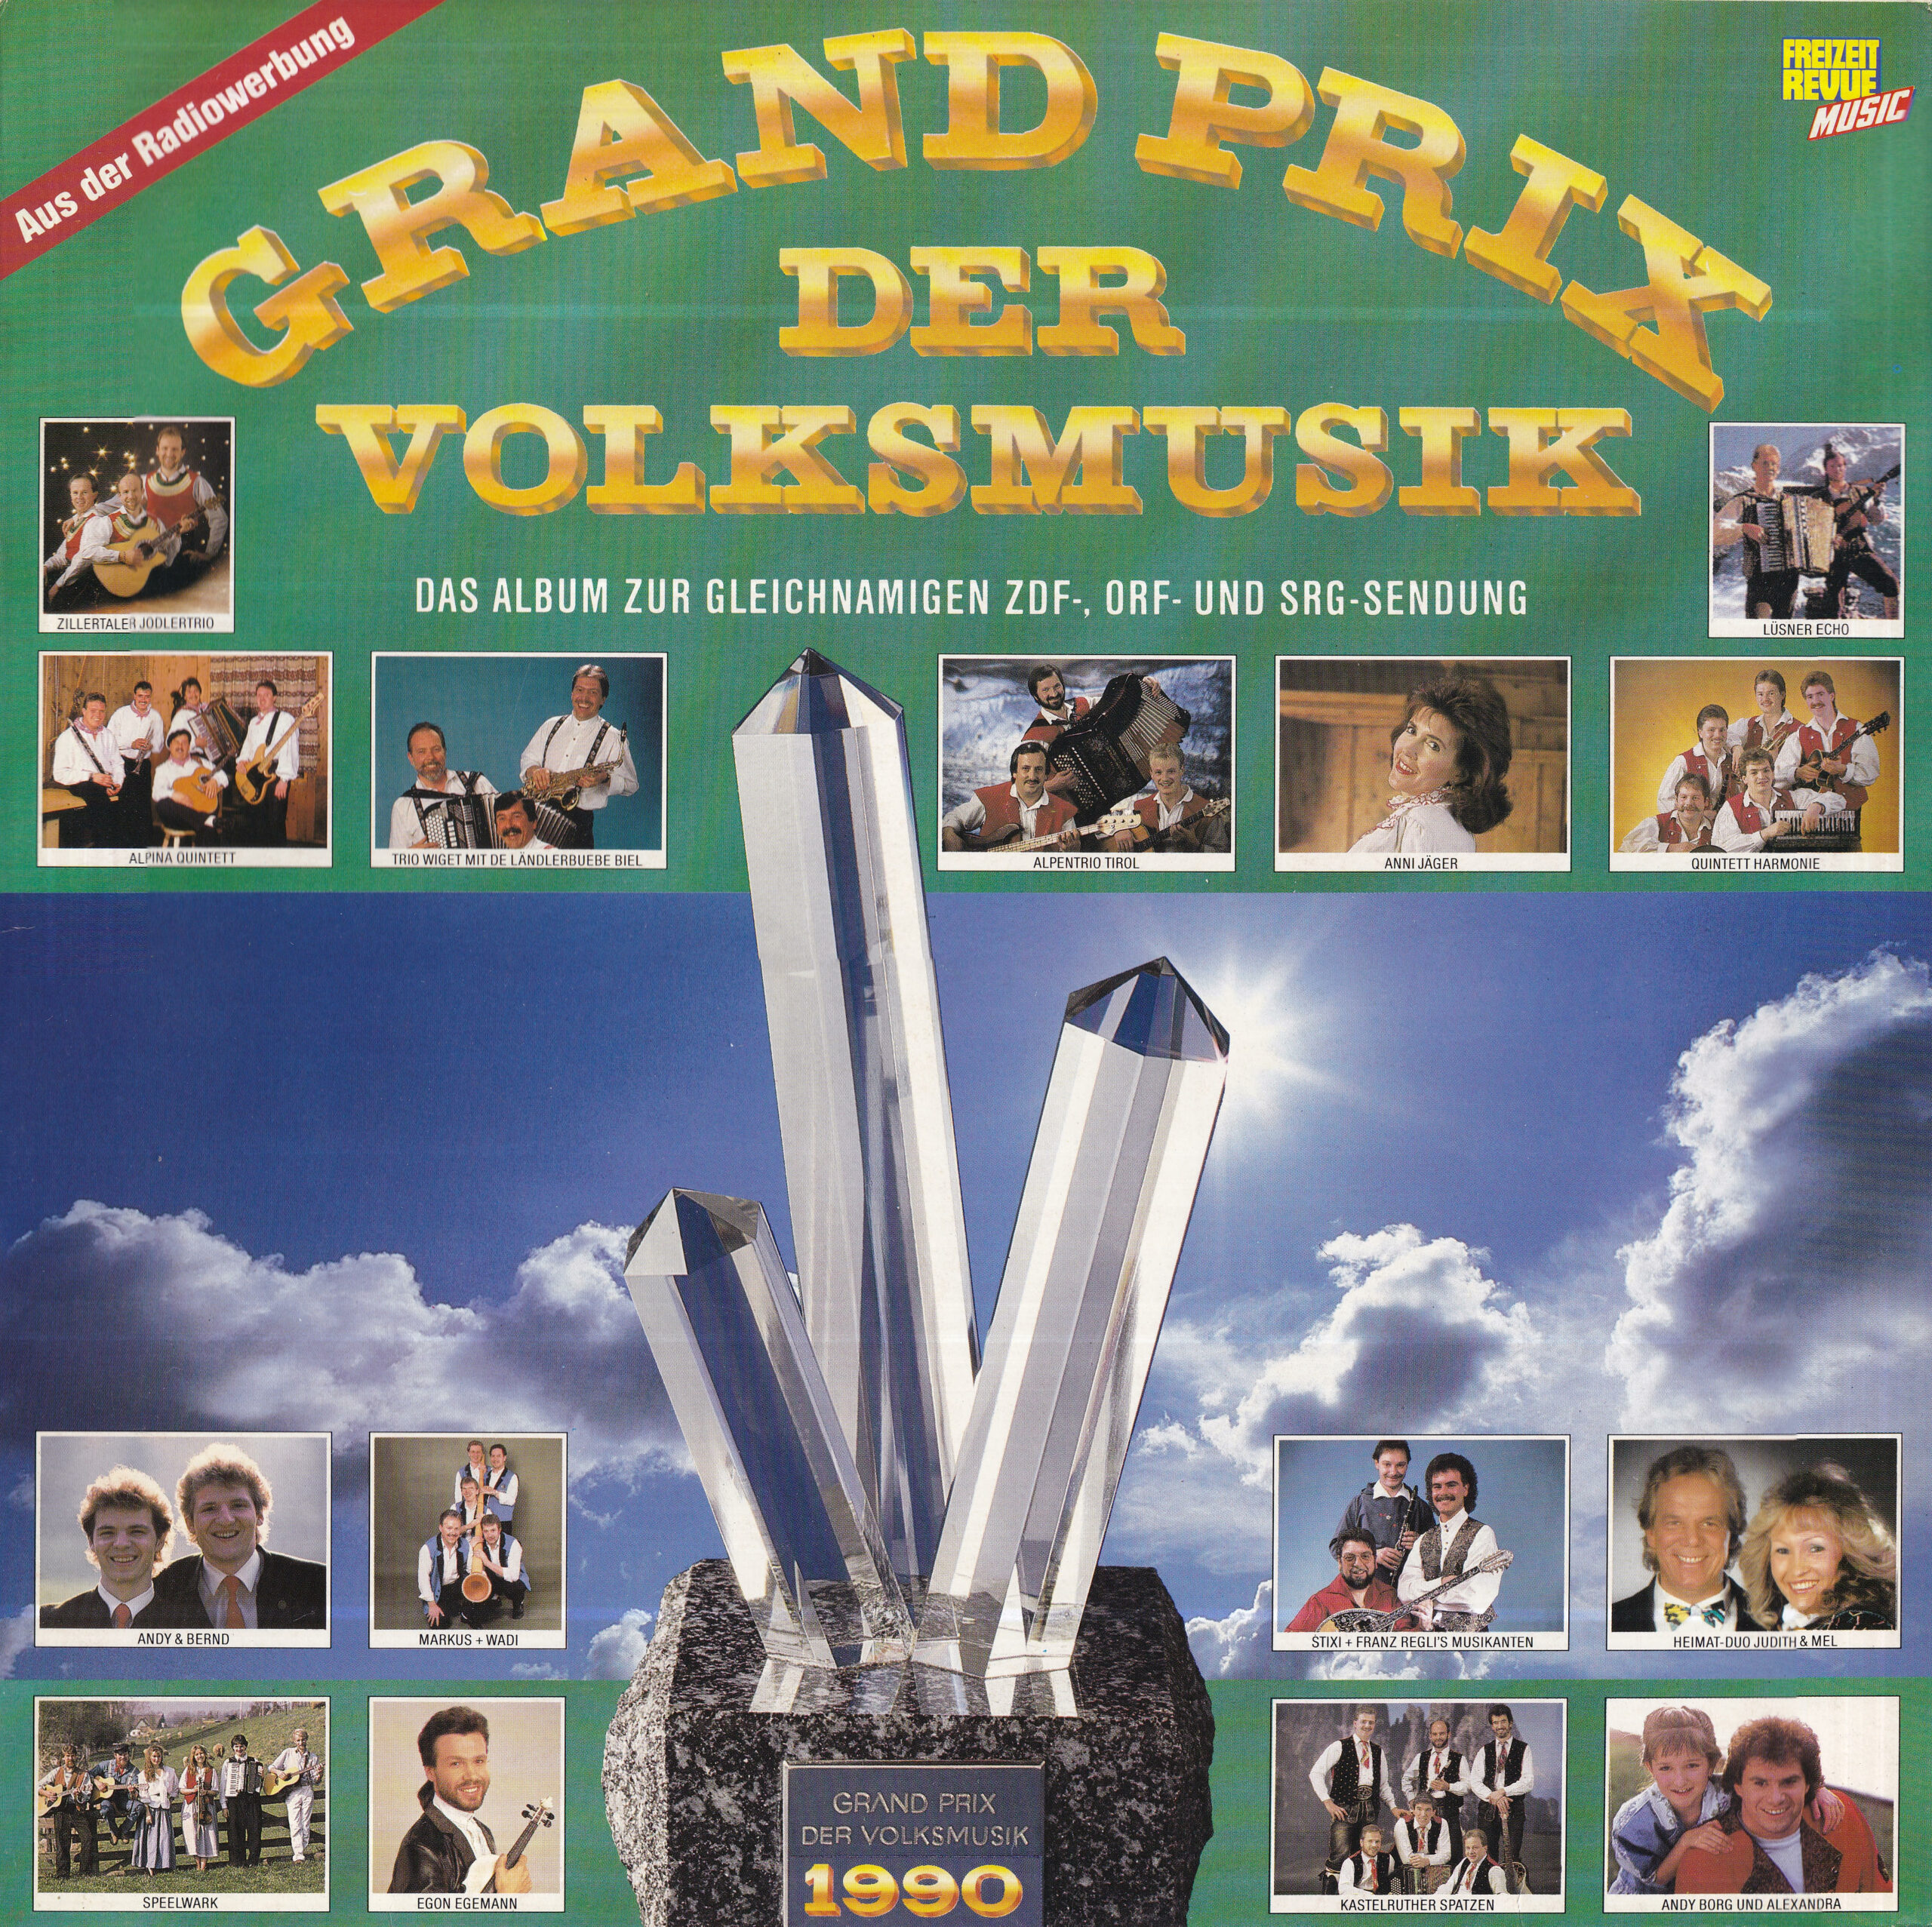 Grand Prix der Volksmusik 1990 – 1